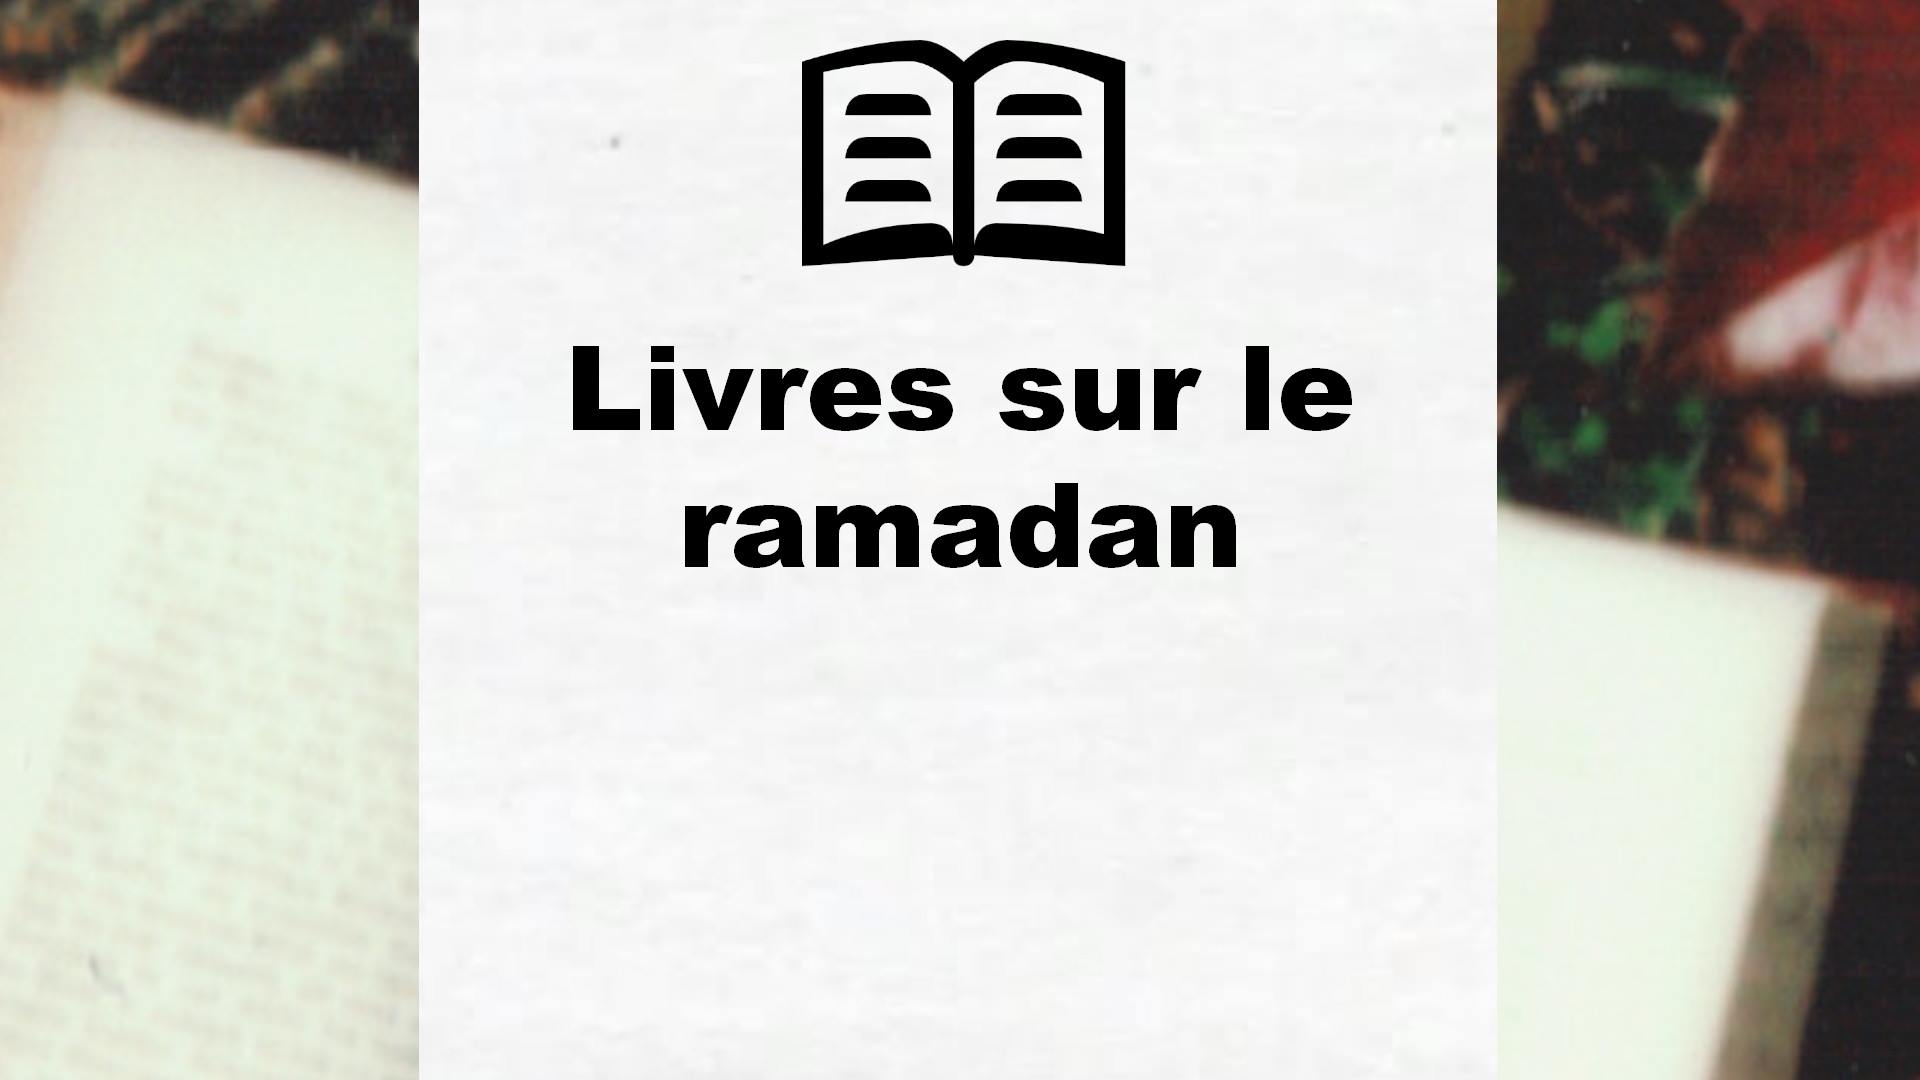 Livres sur le ramadan